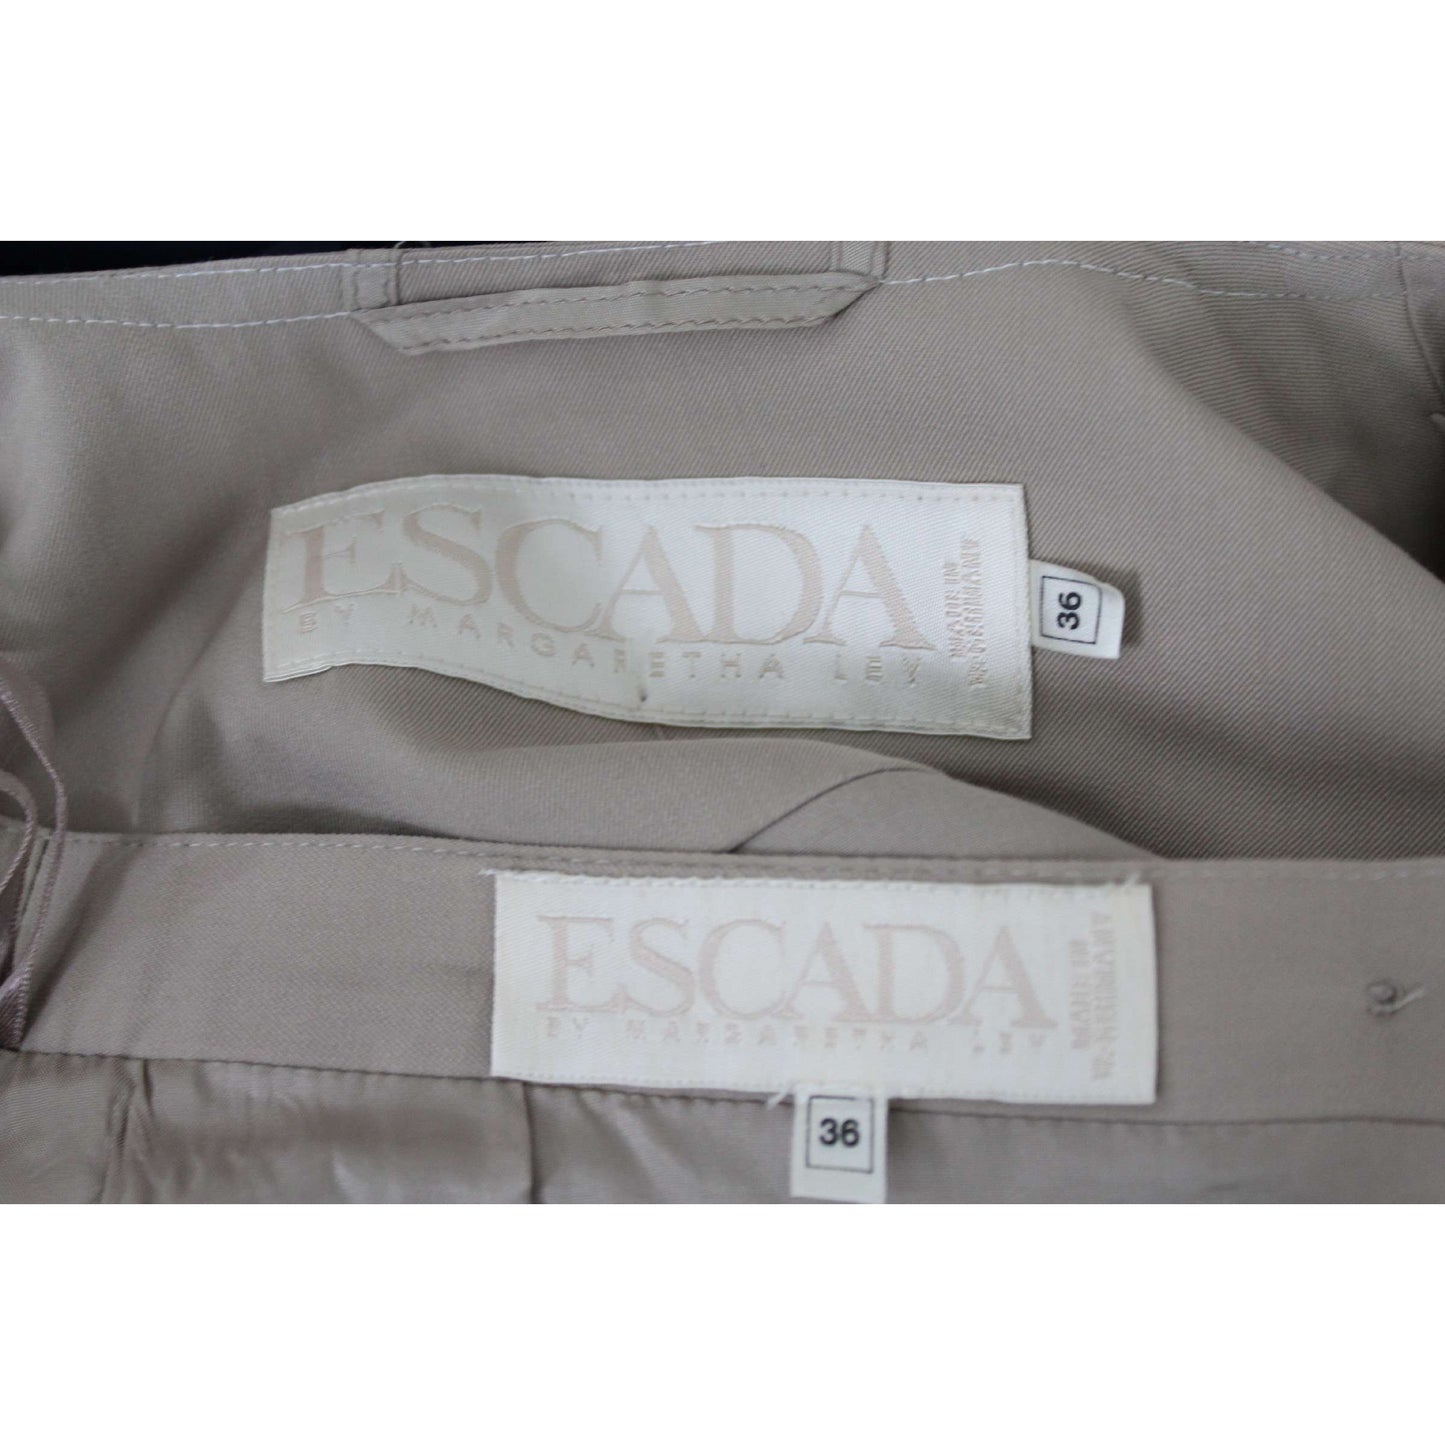 Escada Cotton Beige Vintage Suit Skirt